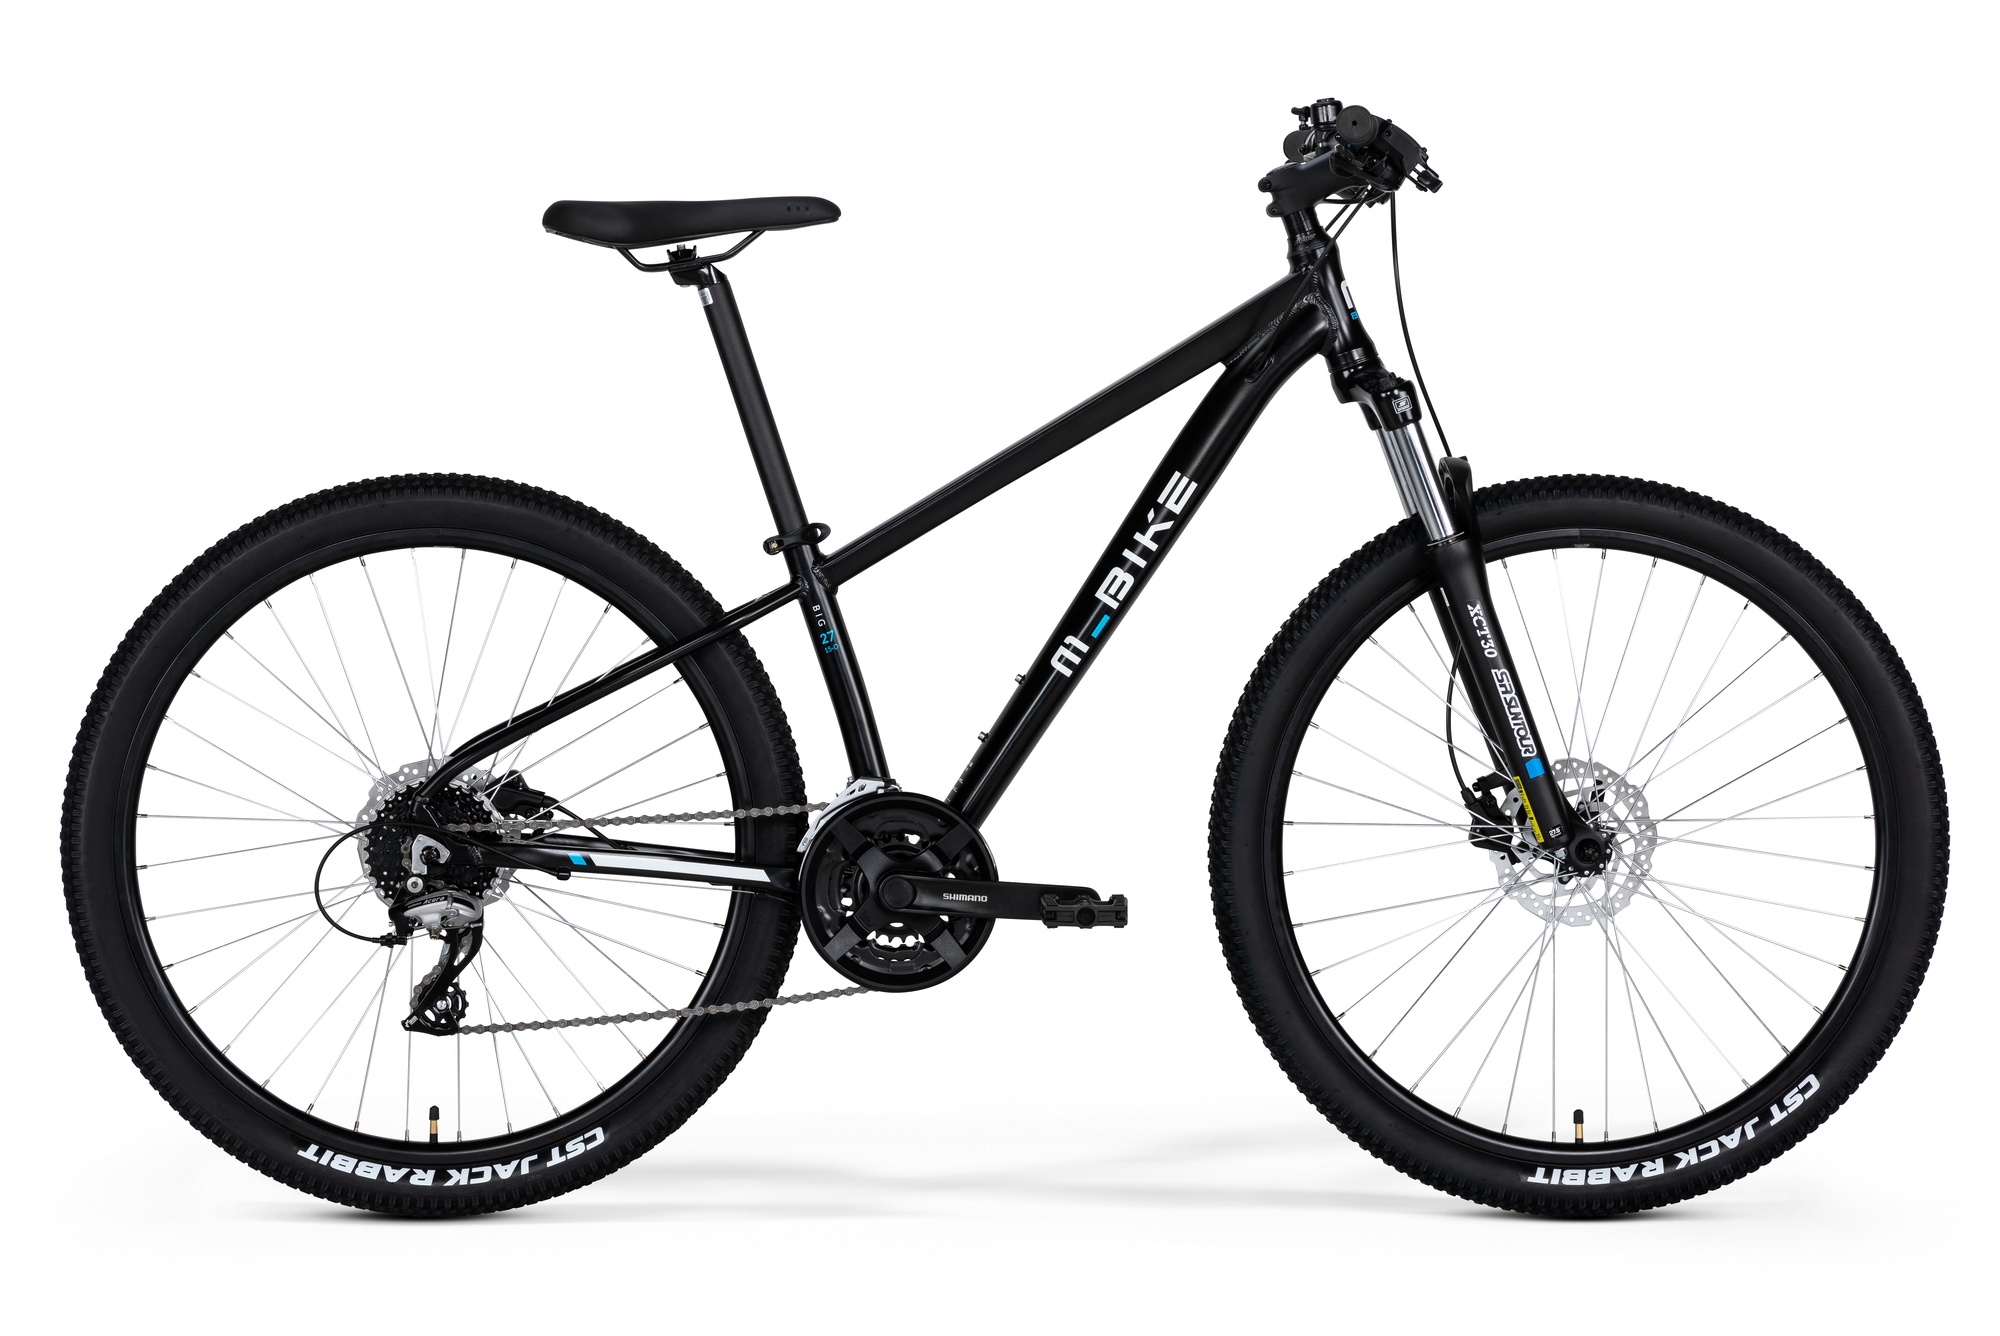 Bicicleta de munte barbati M-BIKE BIG 27 15-D Negru 2021